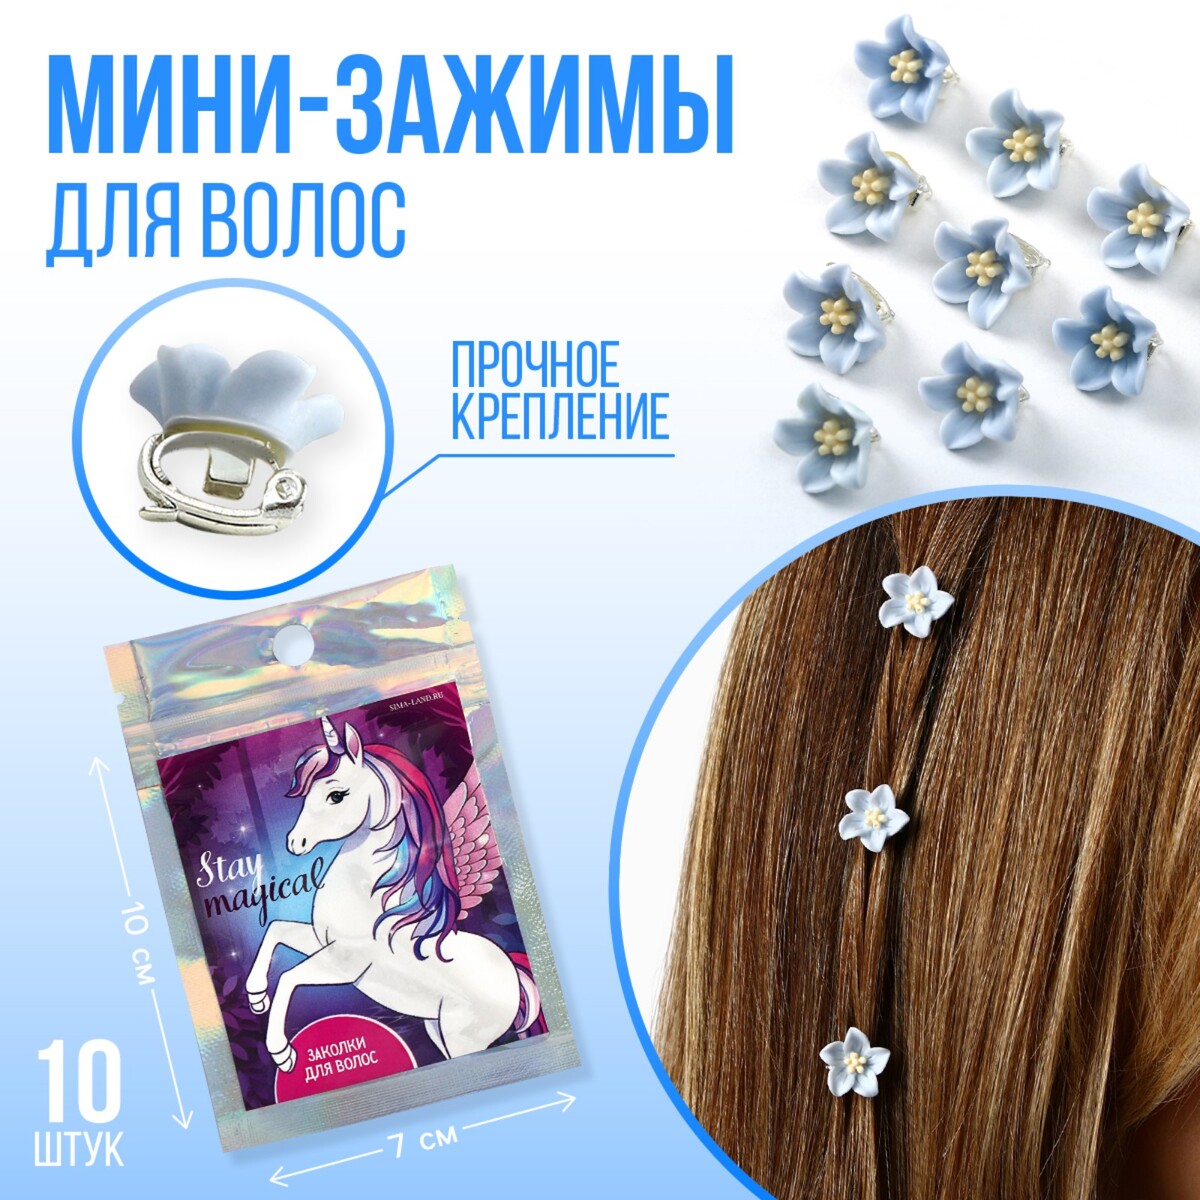 Набор мини-зажимов для украшения волос stay magical, 10 шт., 1.3 х 1.3 х 1.5 см if i stay